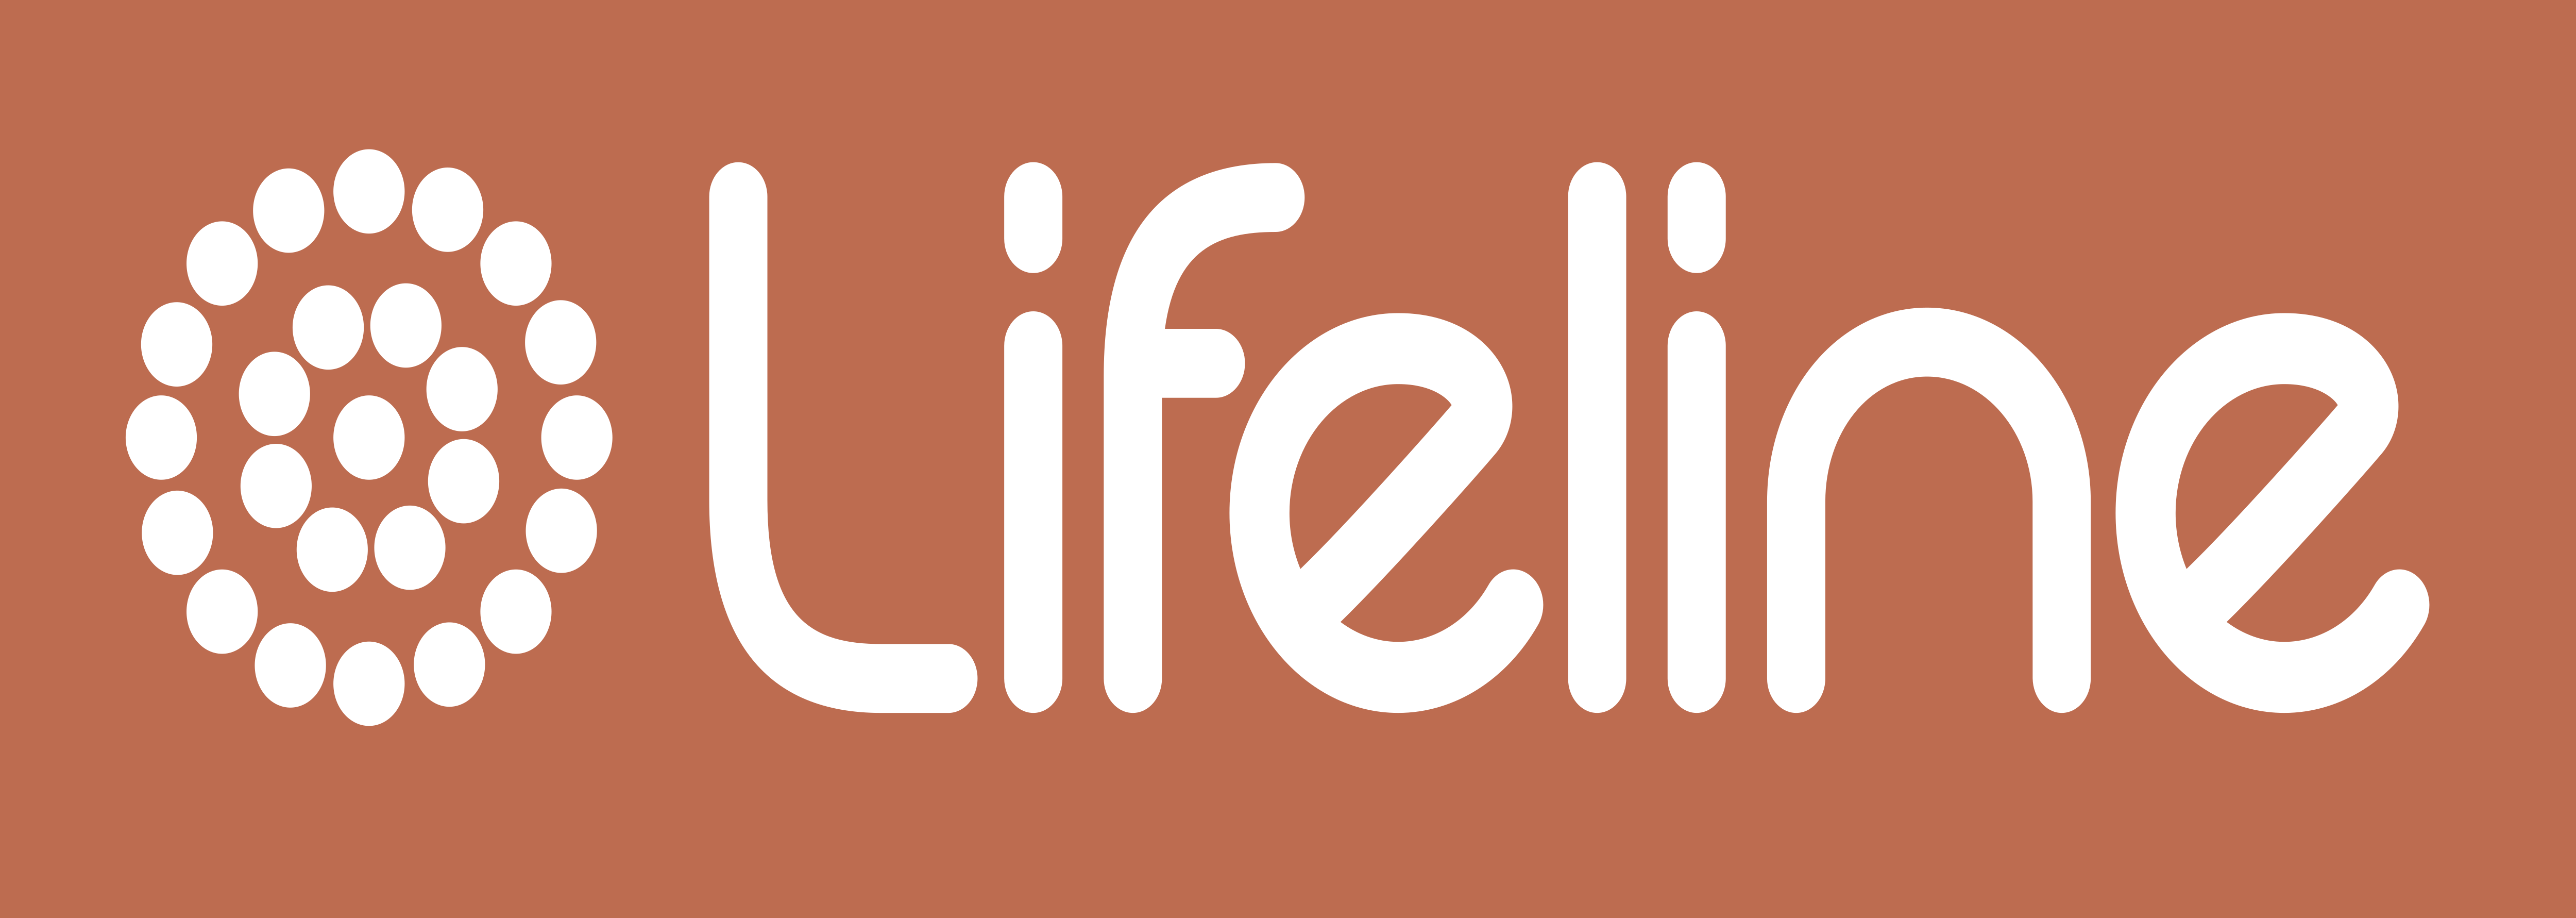 Lifeline Logo Png - Lifeline Australia Logo, Transparent Png - vhv